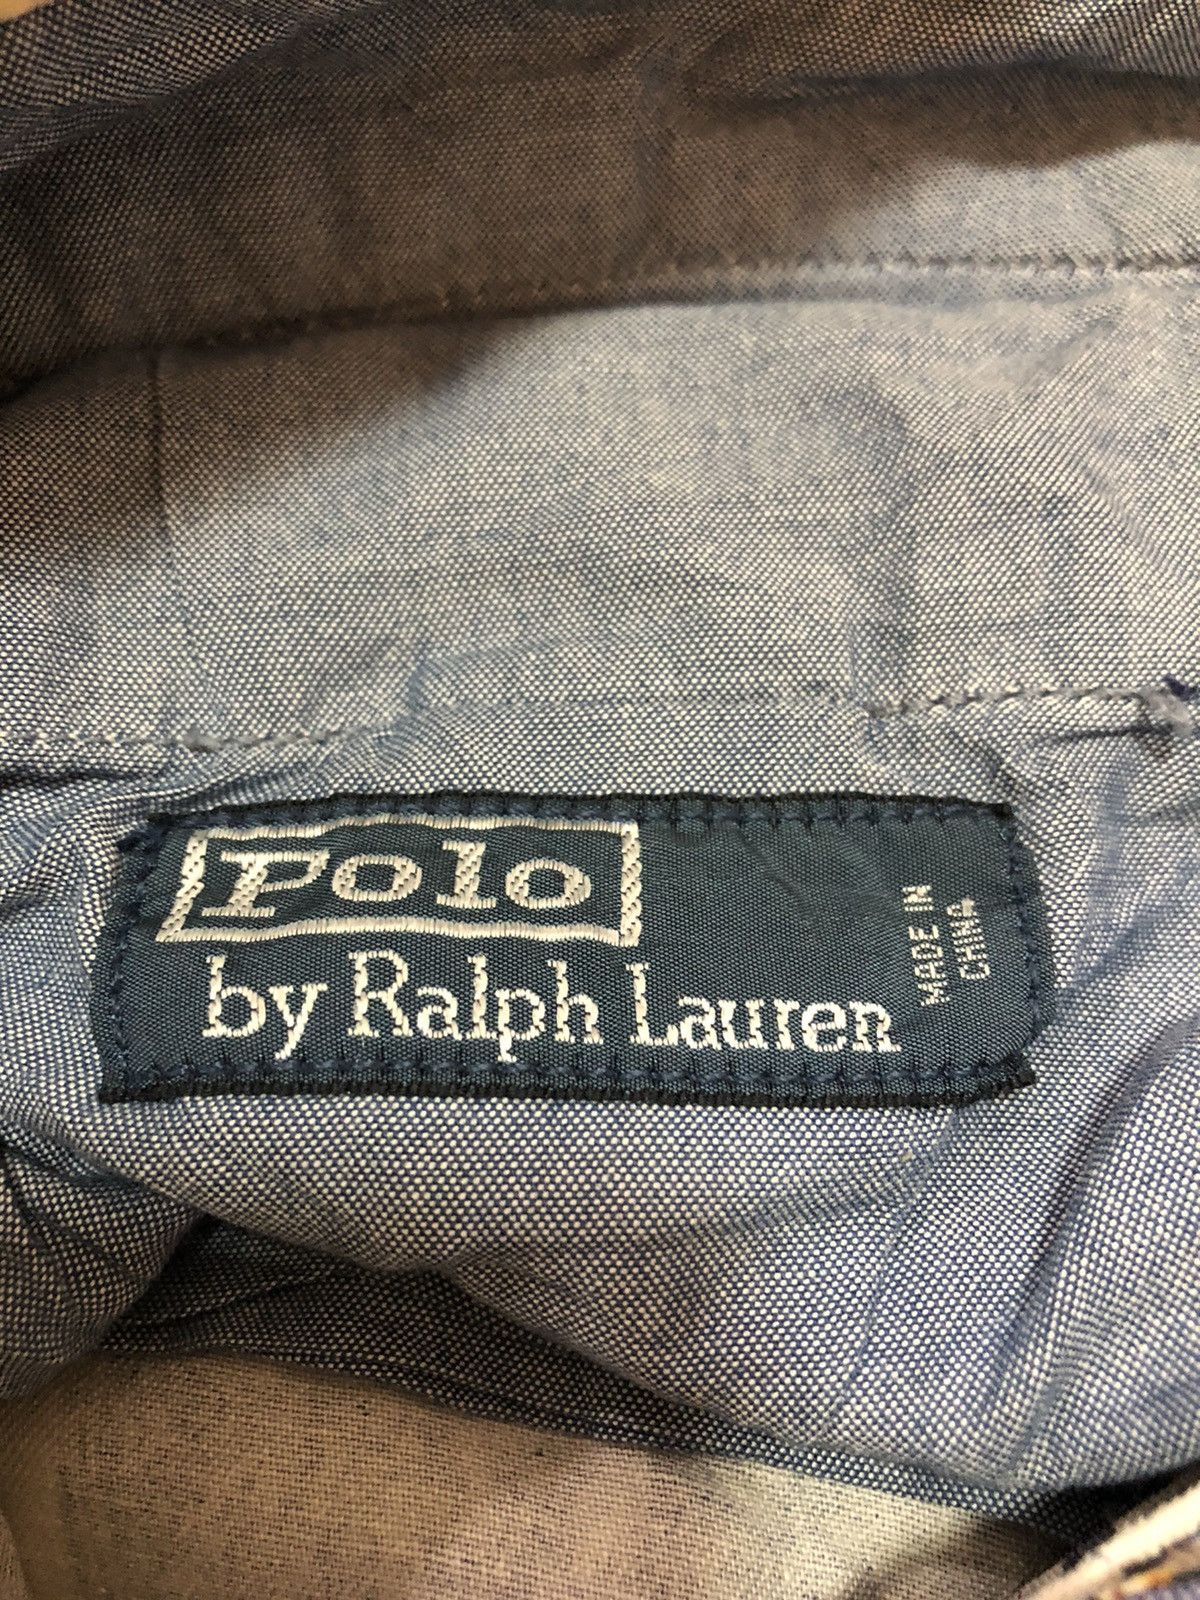 Polo Ralph Lauren Sailing Gear Vintage Pant - 8